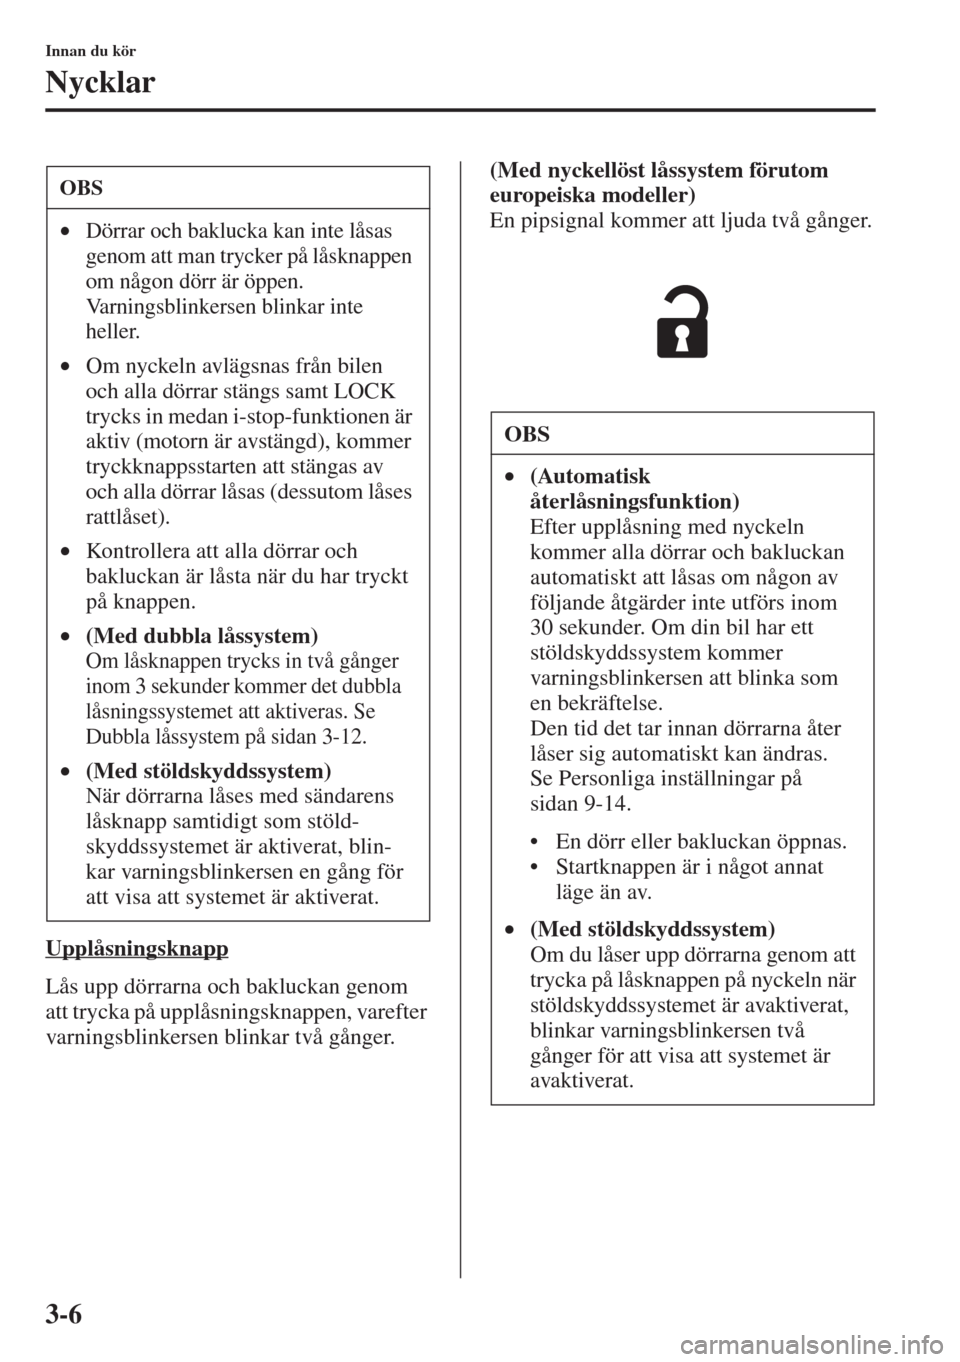 MAZDA MODEL 6 2015  Ägarmanual (in Swedish) 3-6
Innan du kör
Nycklar
Upplåsningsknapp
Lås upp dörrarna och bakluckan genom 
att trycka på upplåsningsknappen, varefter 
varningsblinkersen blinkar två gånger.(Med nyckellöst låssystem f�